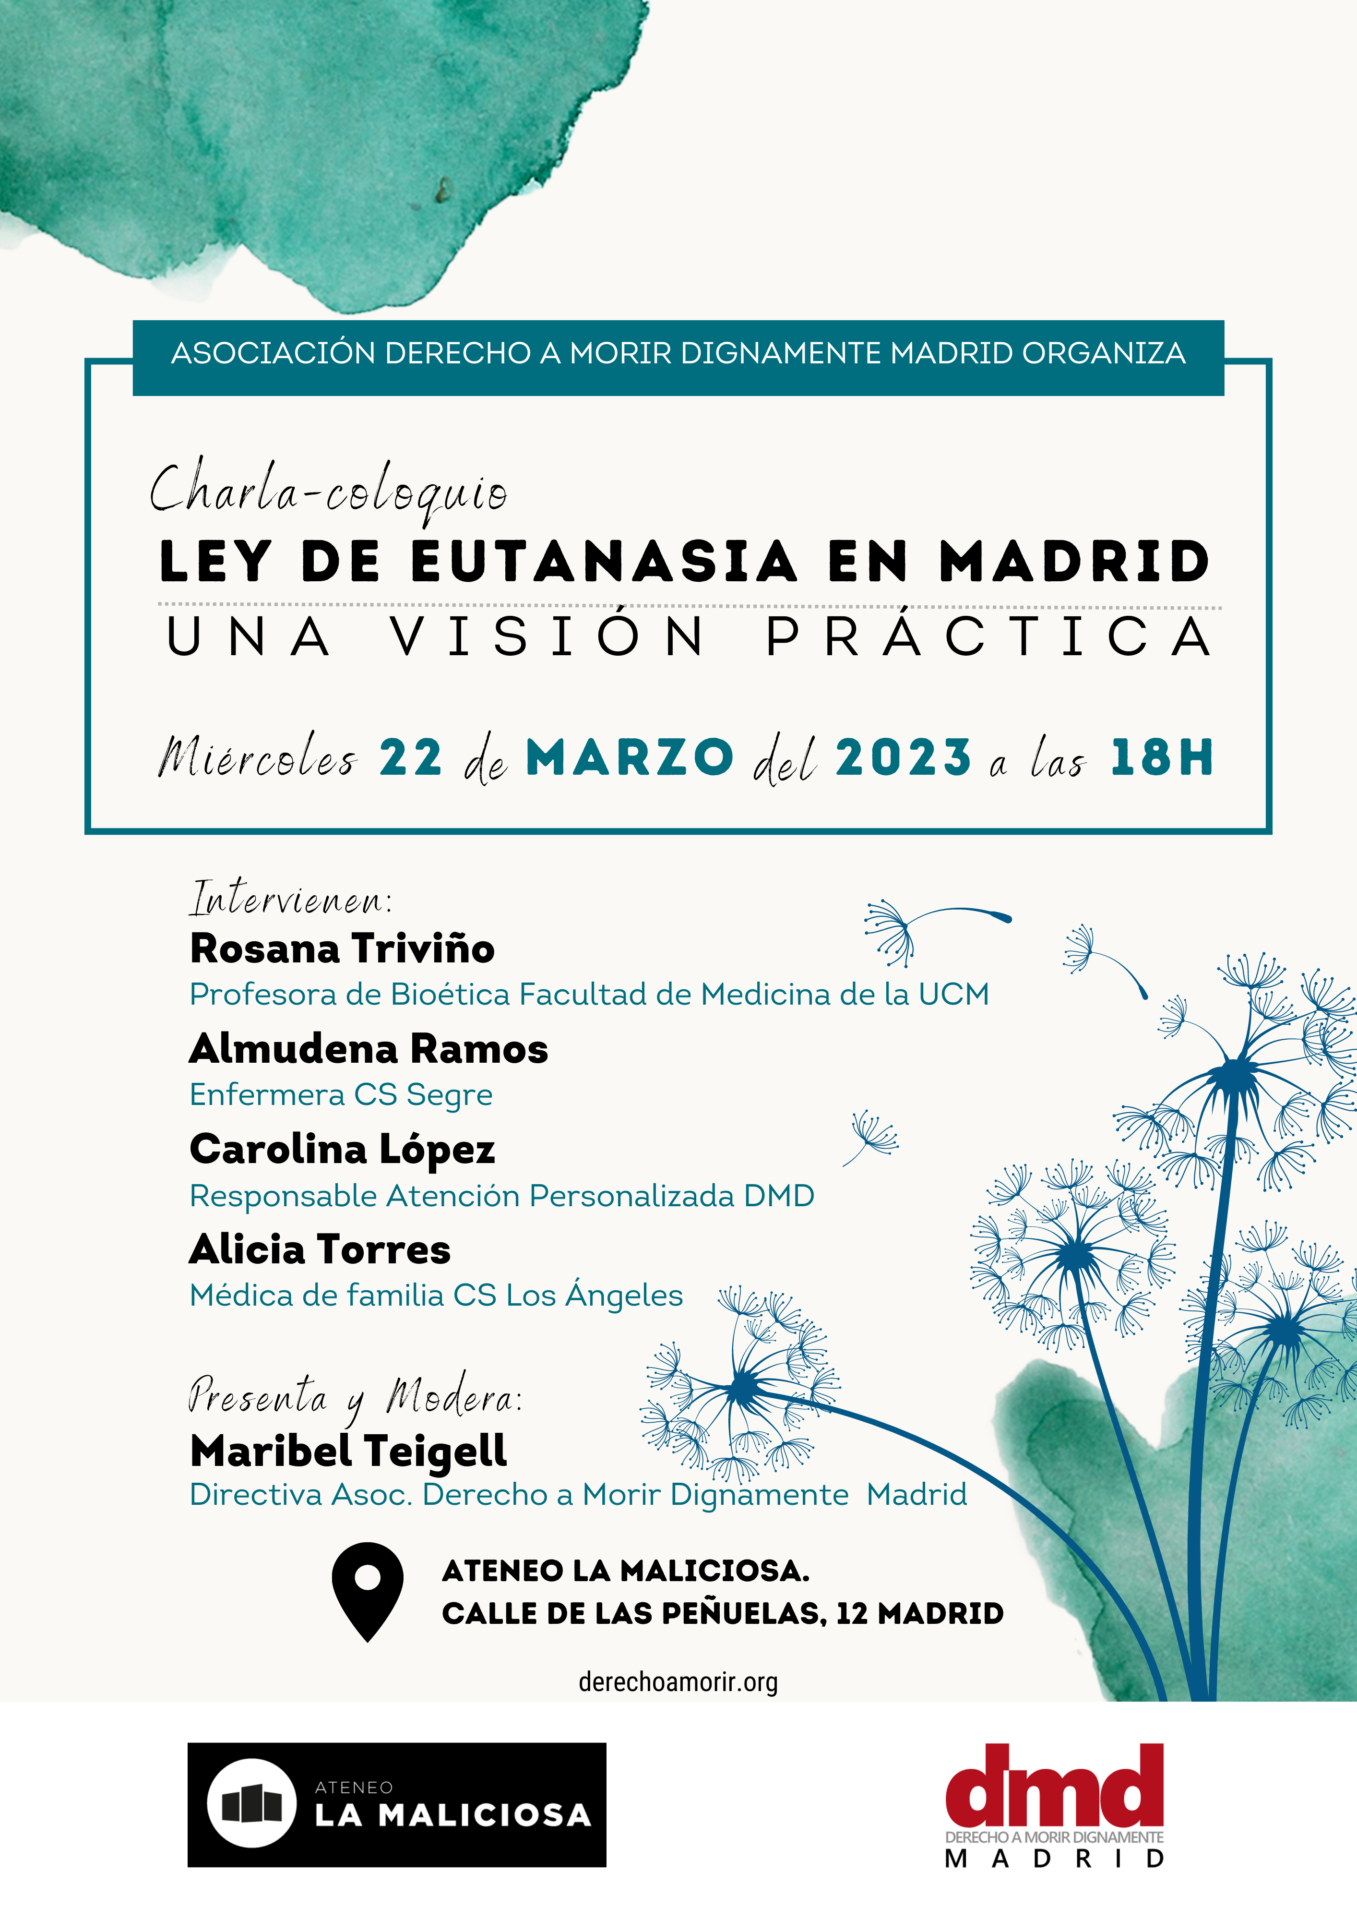 Ley de Eutanasia en Madrid. Una visión práctica